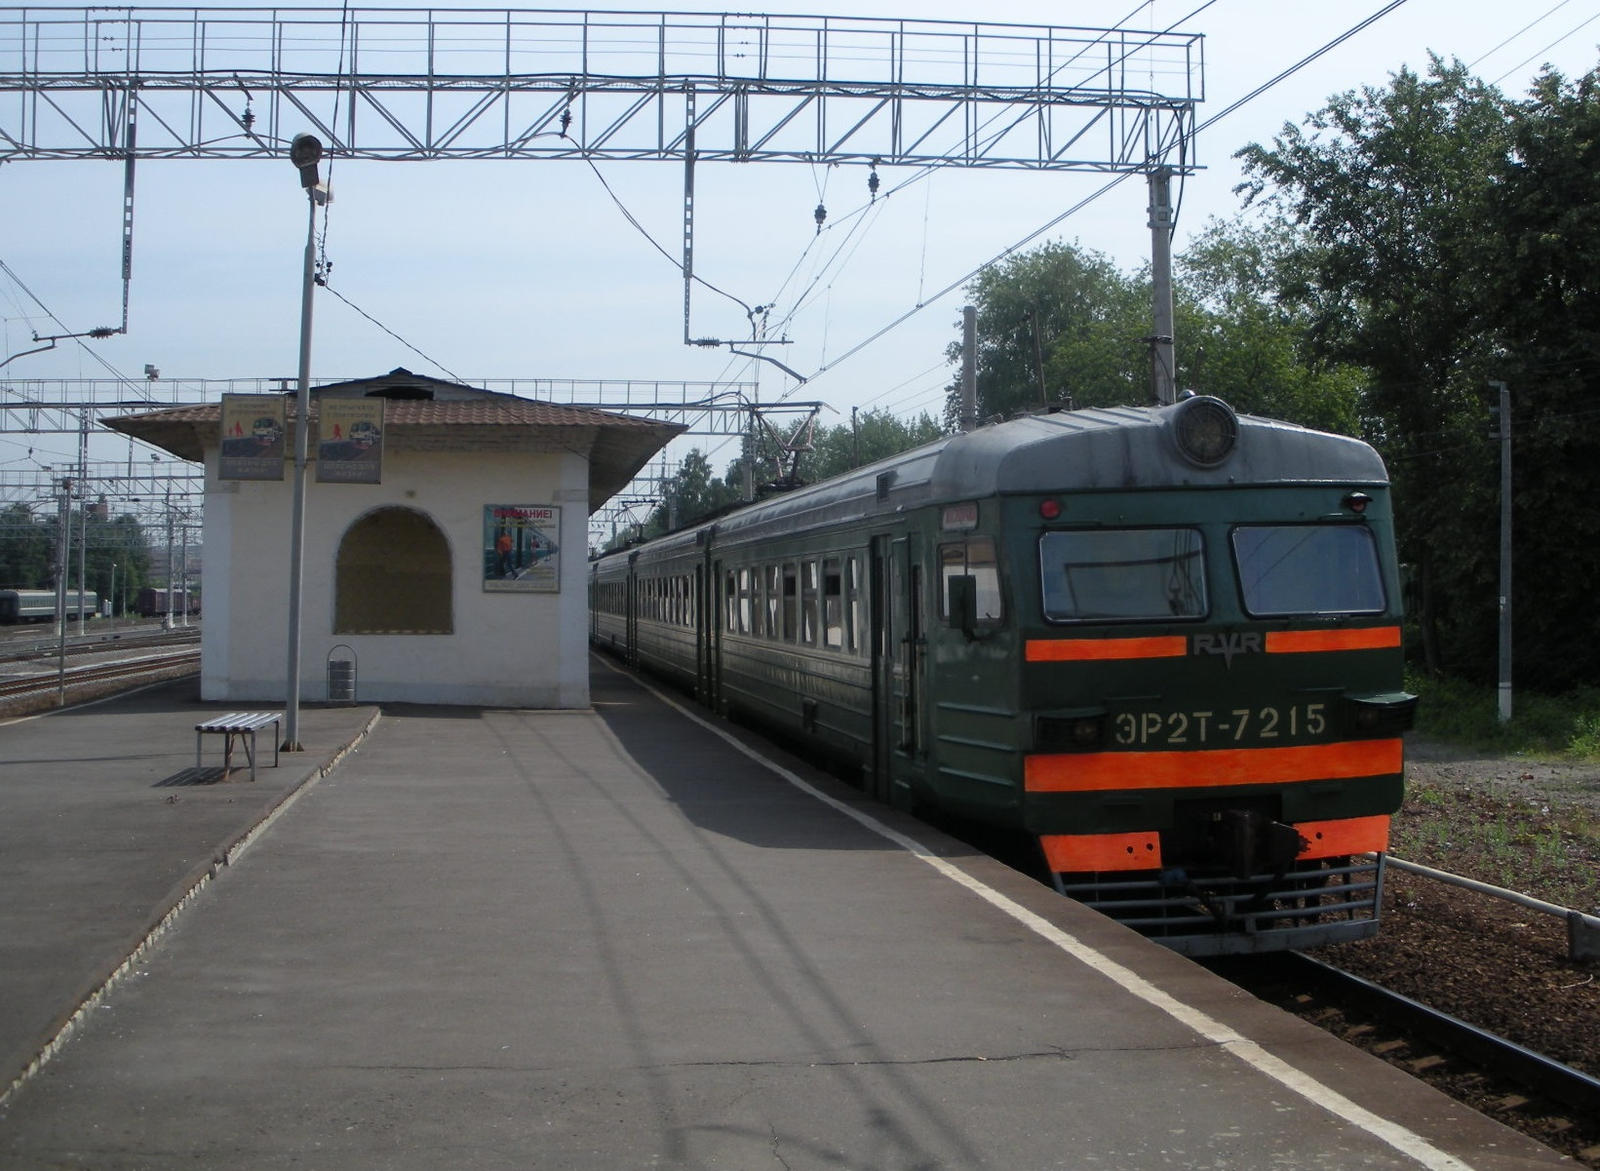 ER2T-7215 Leaving Kuskovo